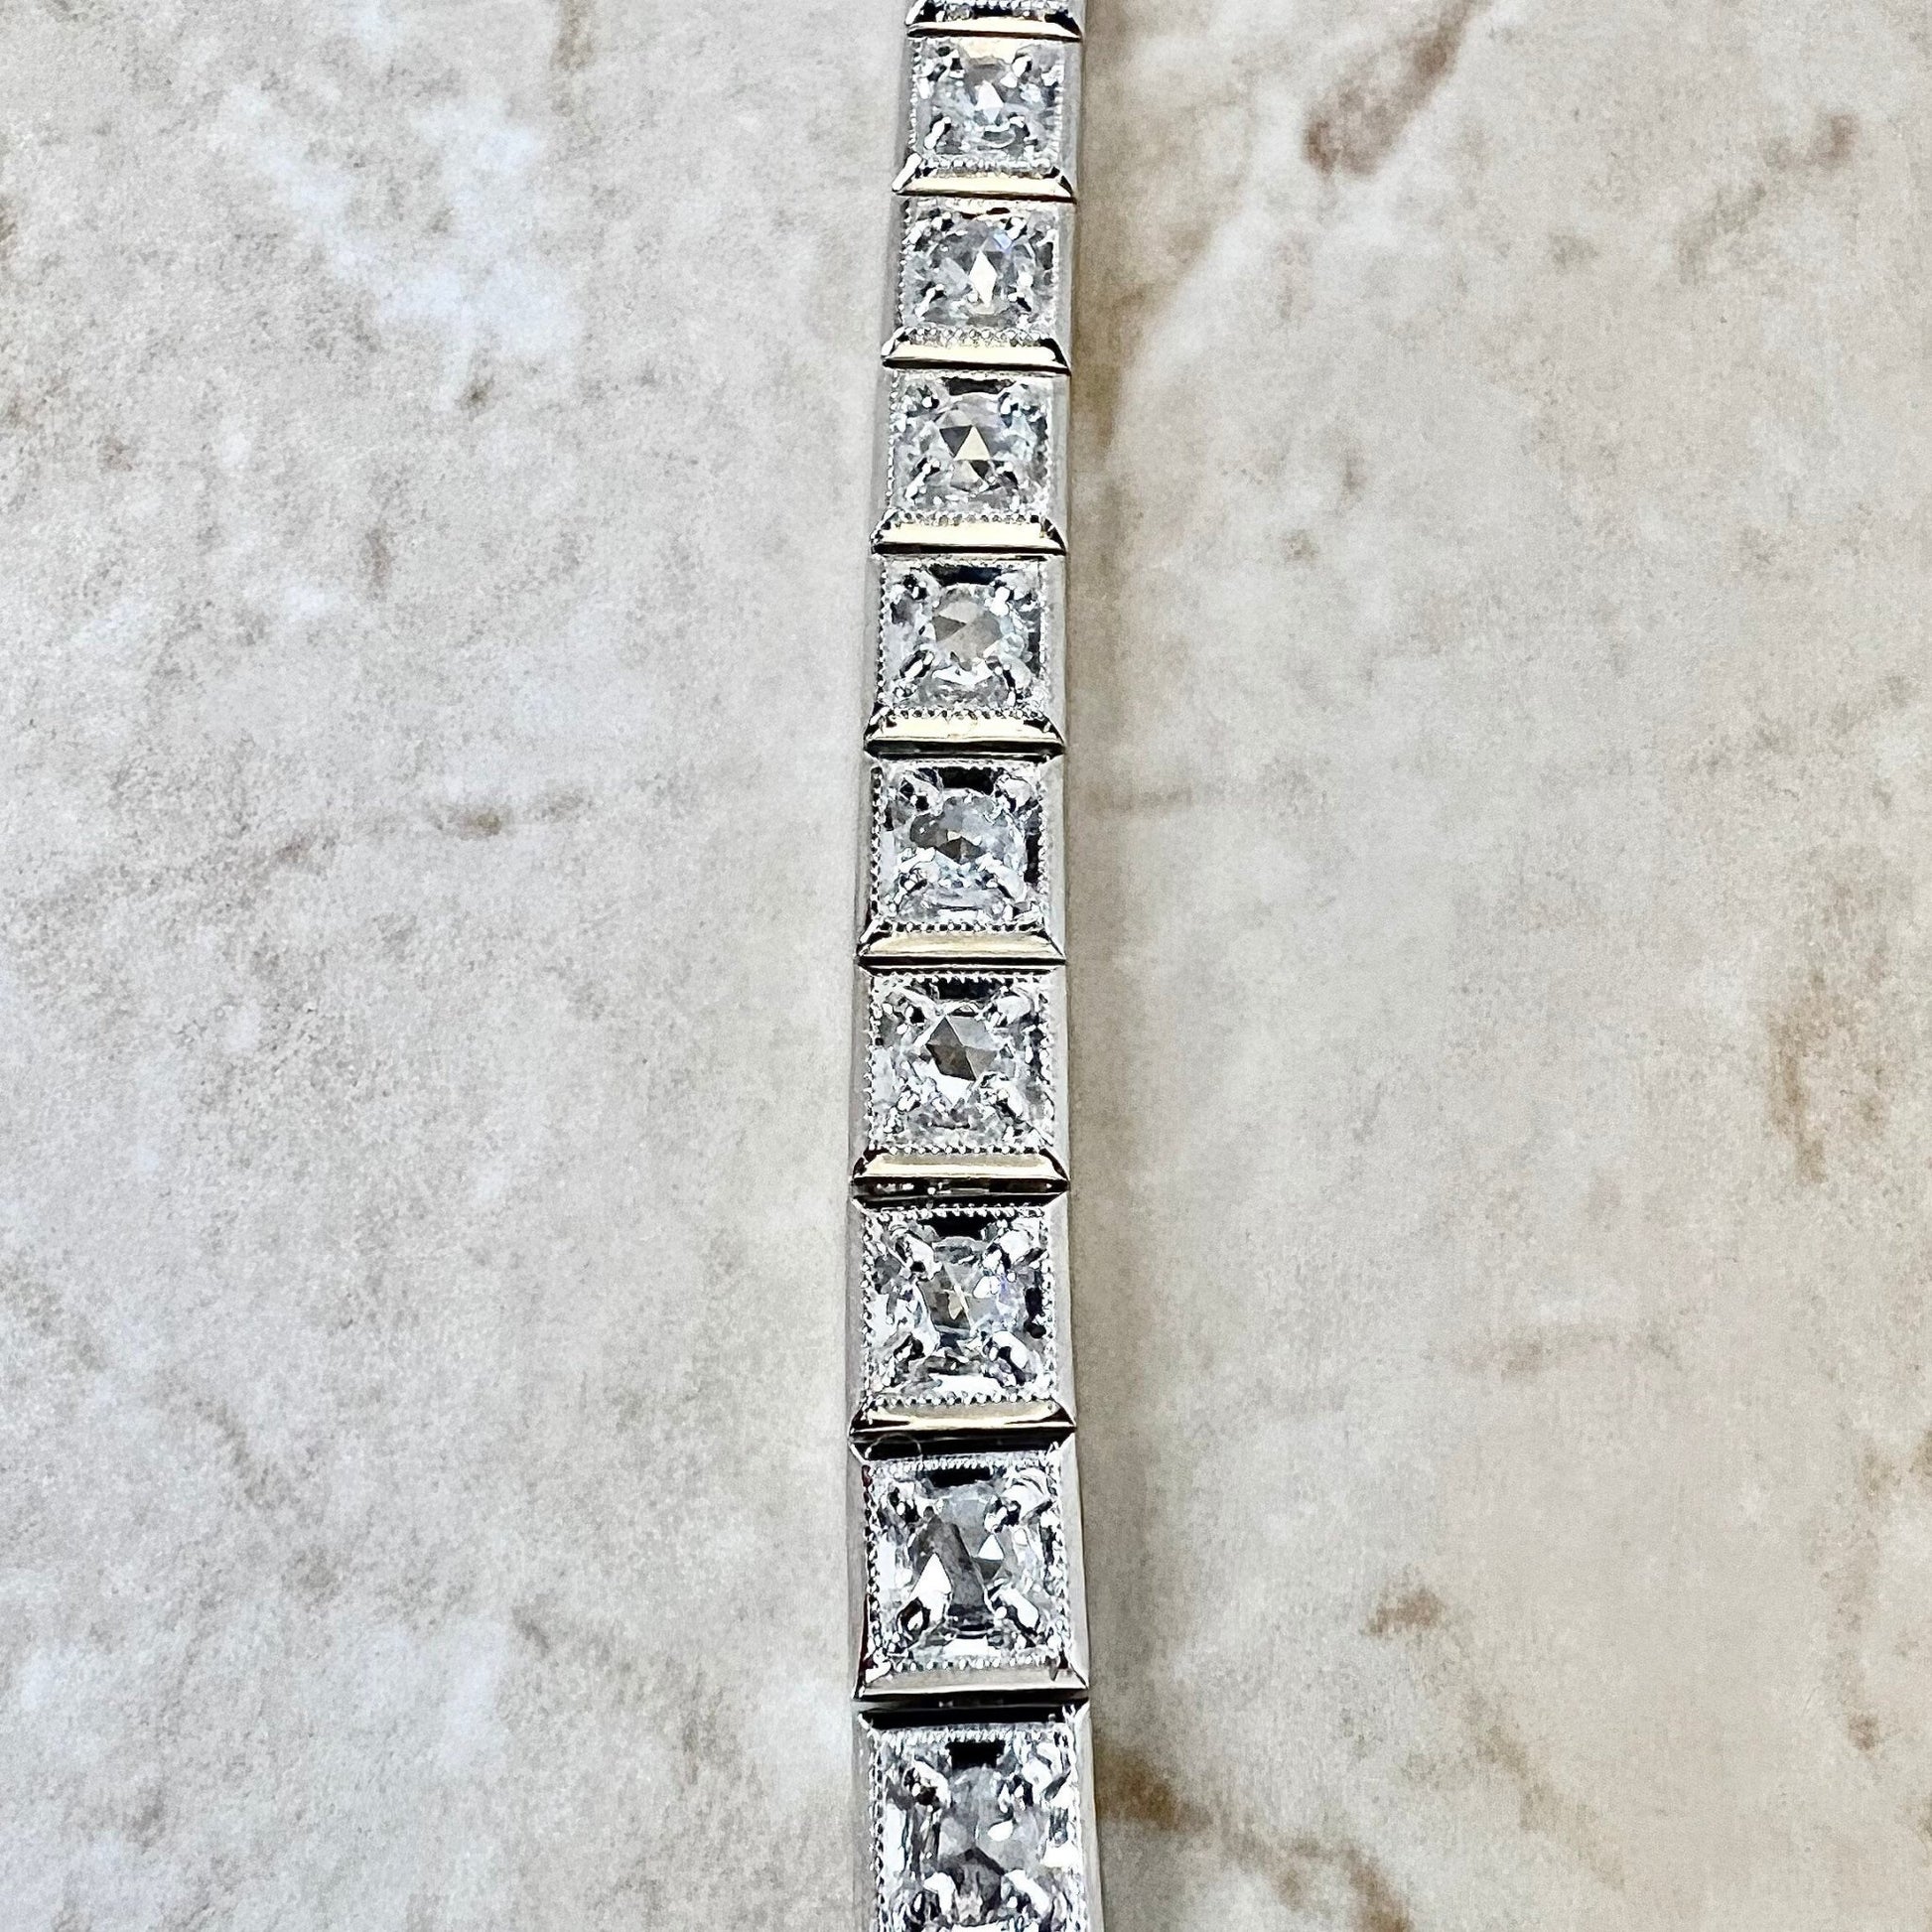 Fine Vintage 18K Rose Cut Diamond Tennis Bracelet 3.55 CTTW - White Gold Tennis Bracelet - Birthday Gift - Anniversary Gift For Her